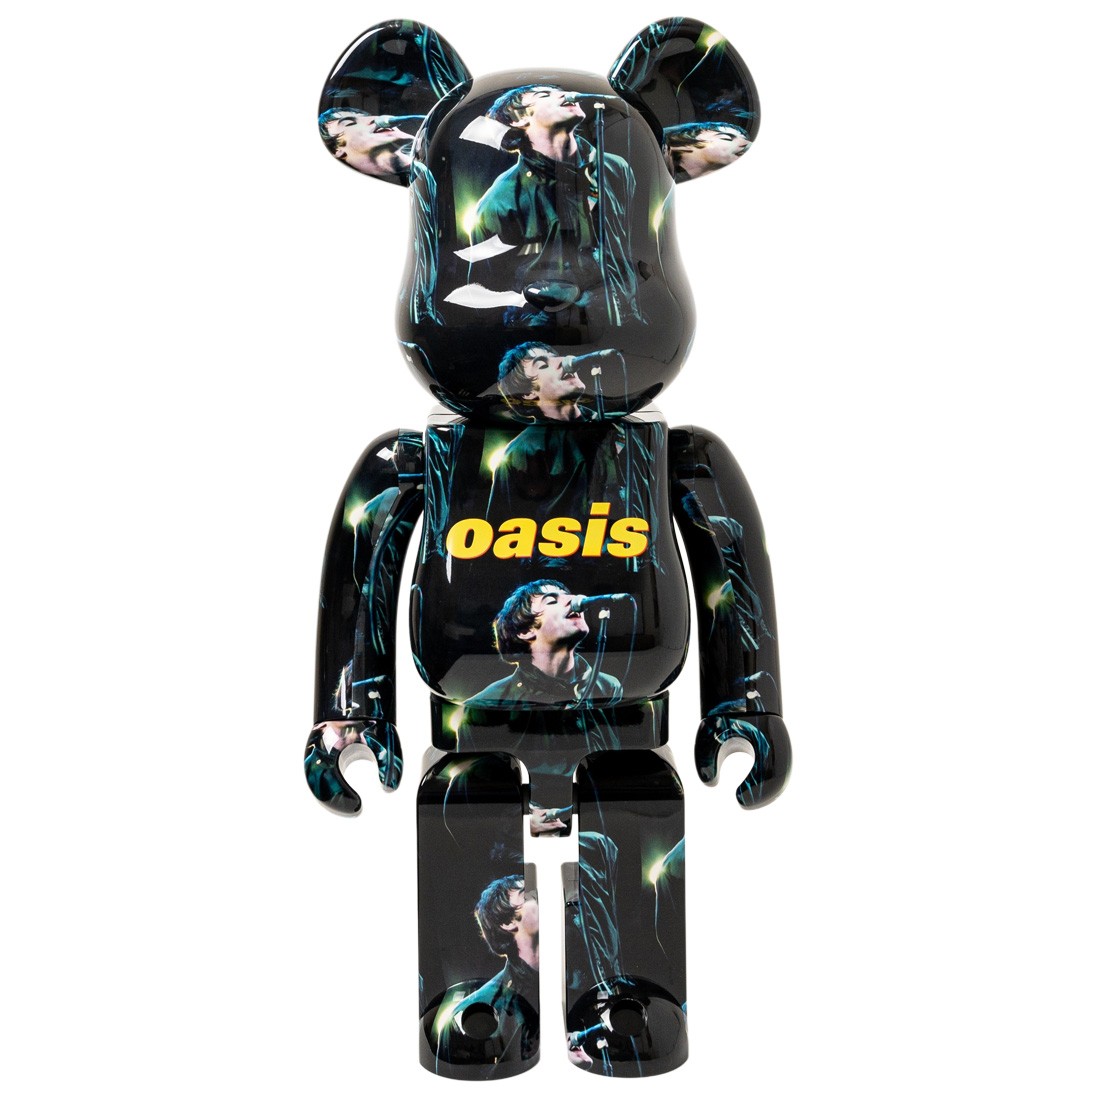 Medicom Oasis Knebworth 1996 Liam Gallagher 1000% Bearbrick Figure (black)